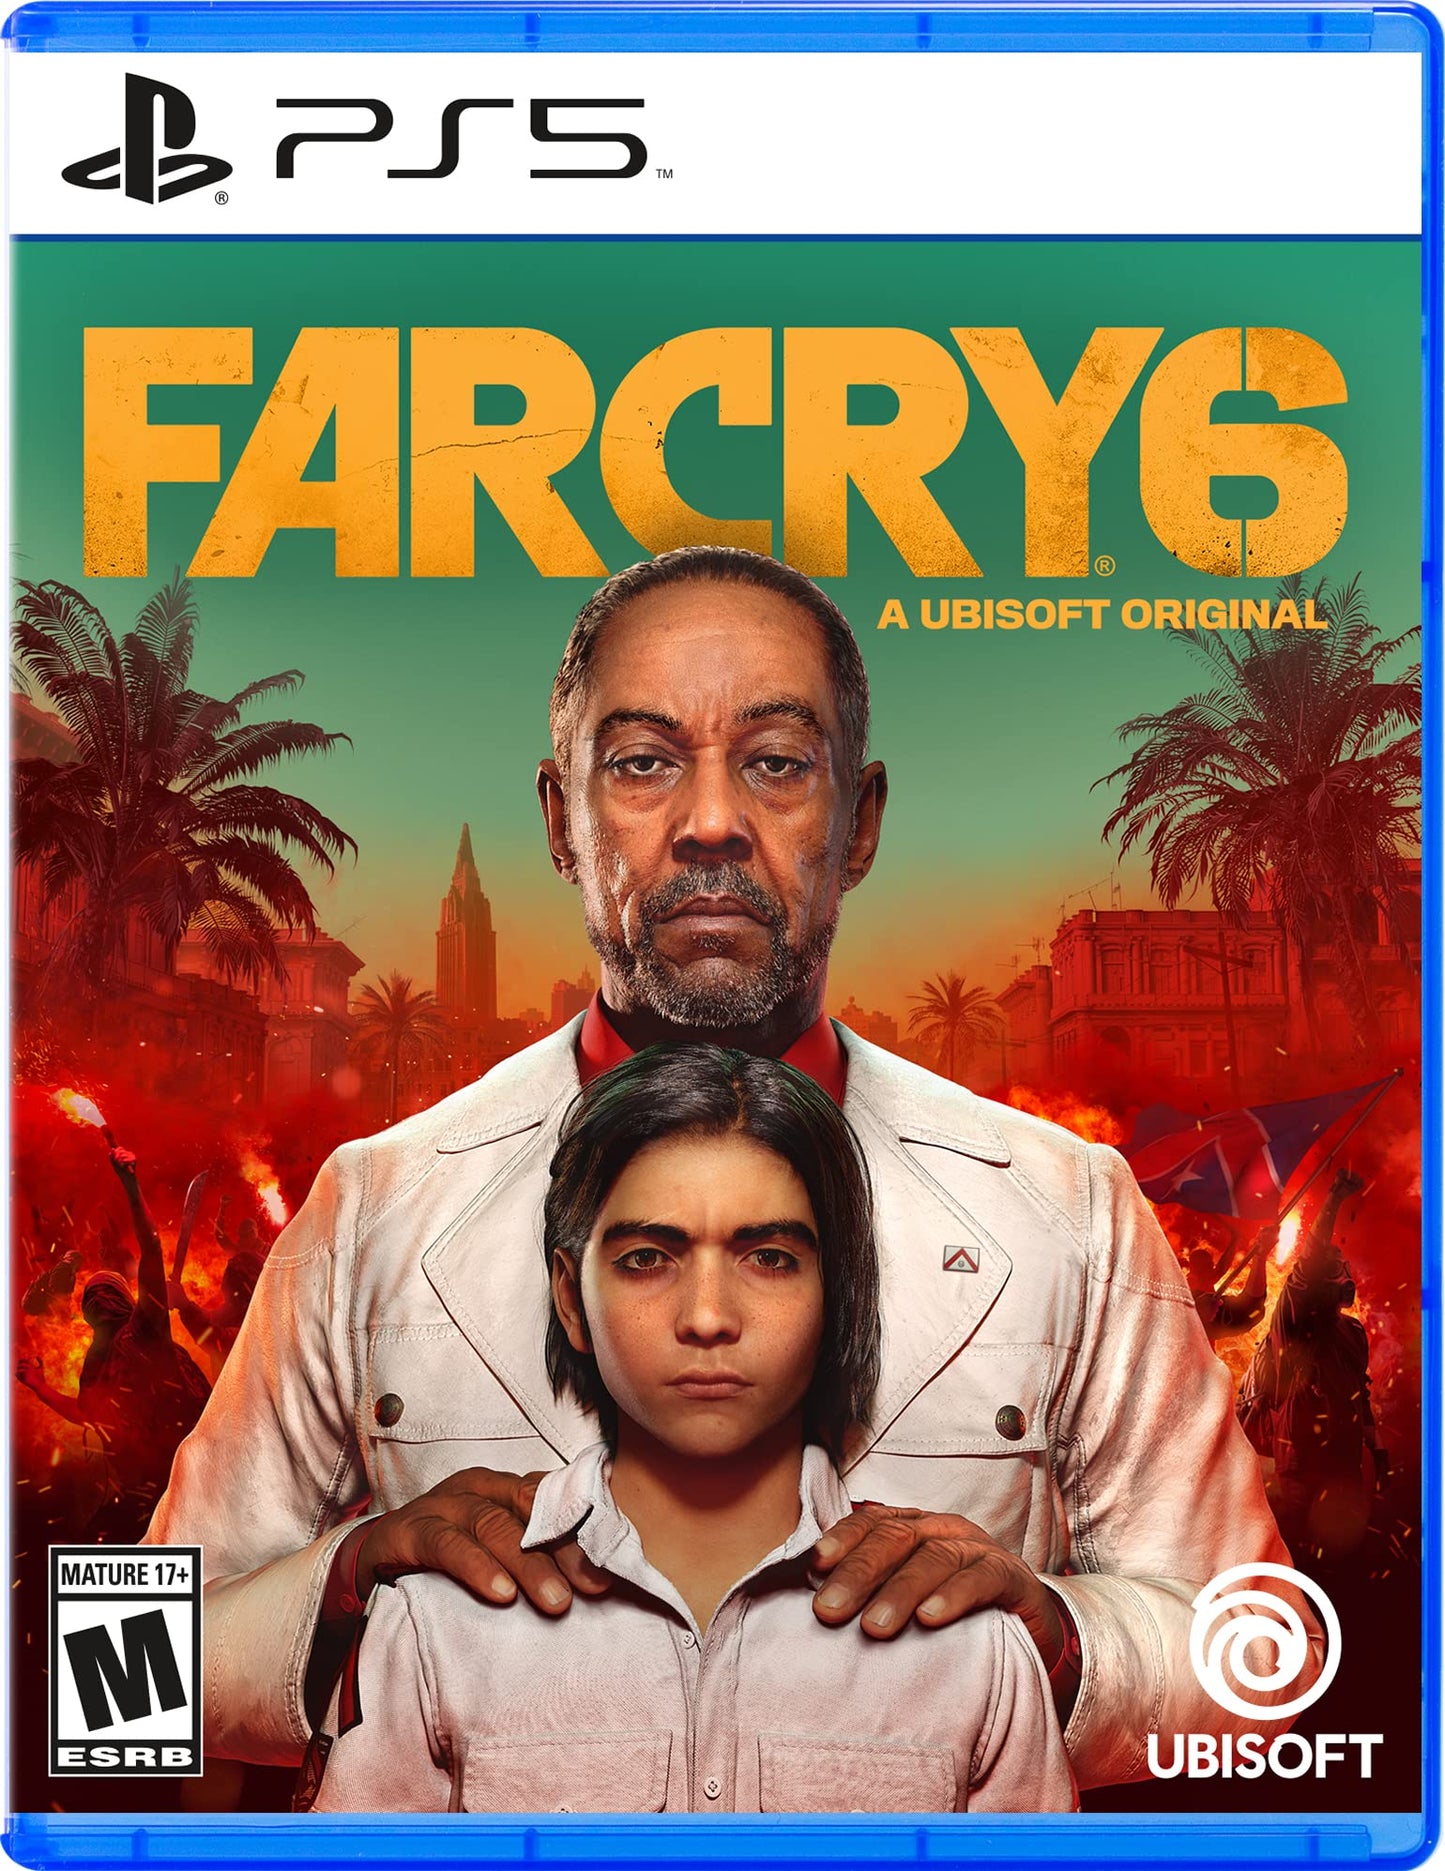 Farcry 6 - A Ubisoft Original